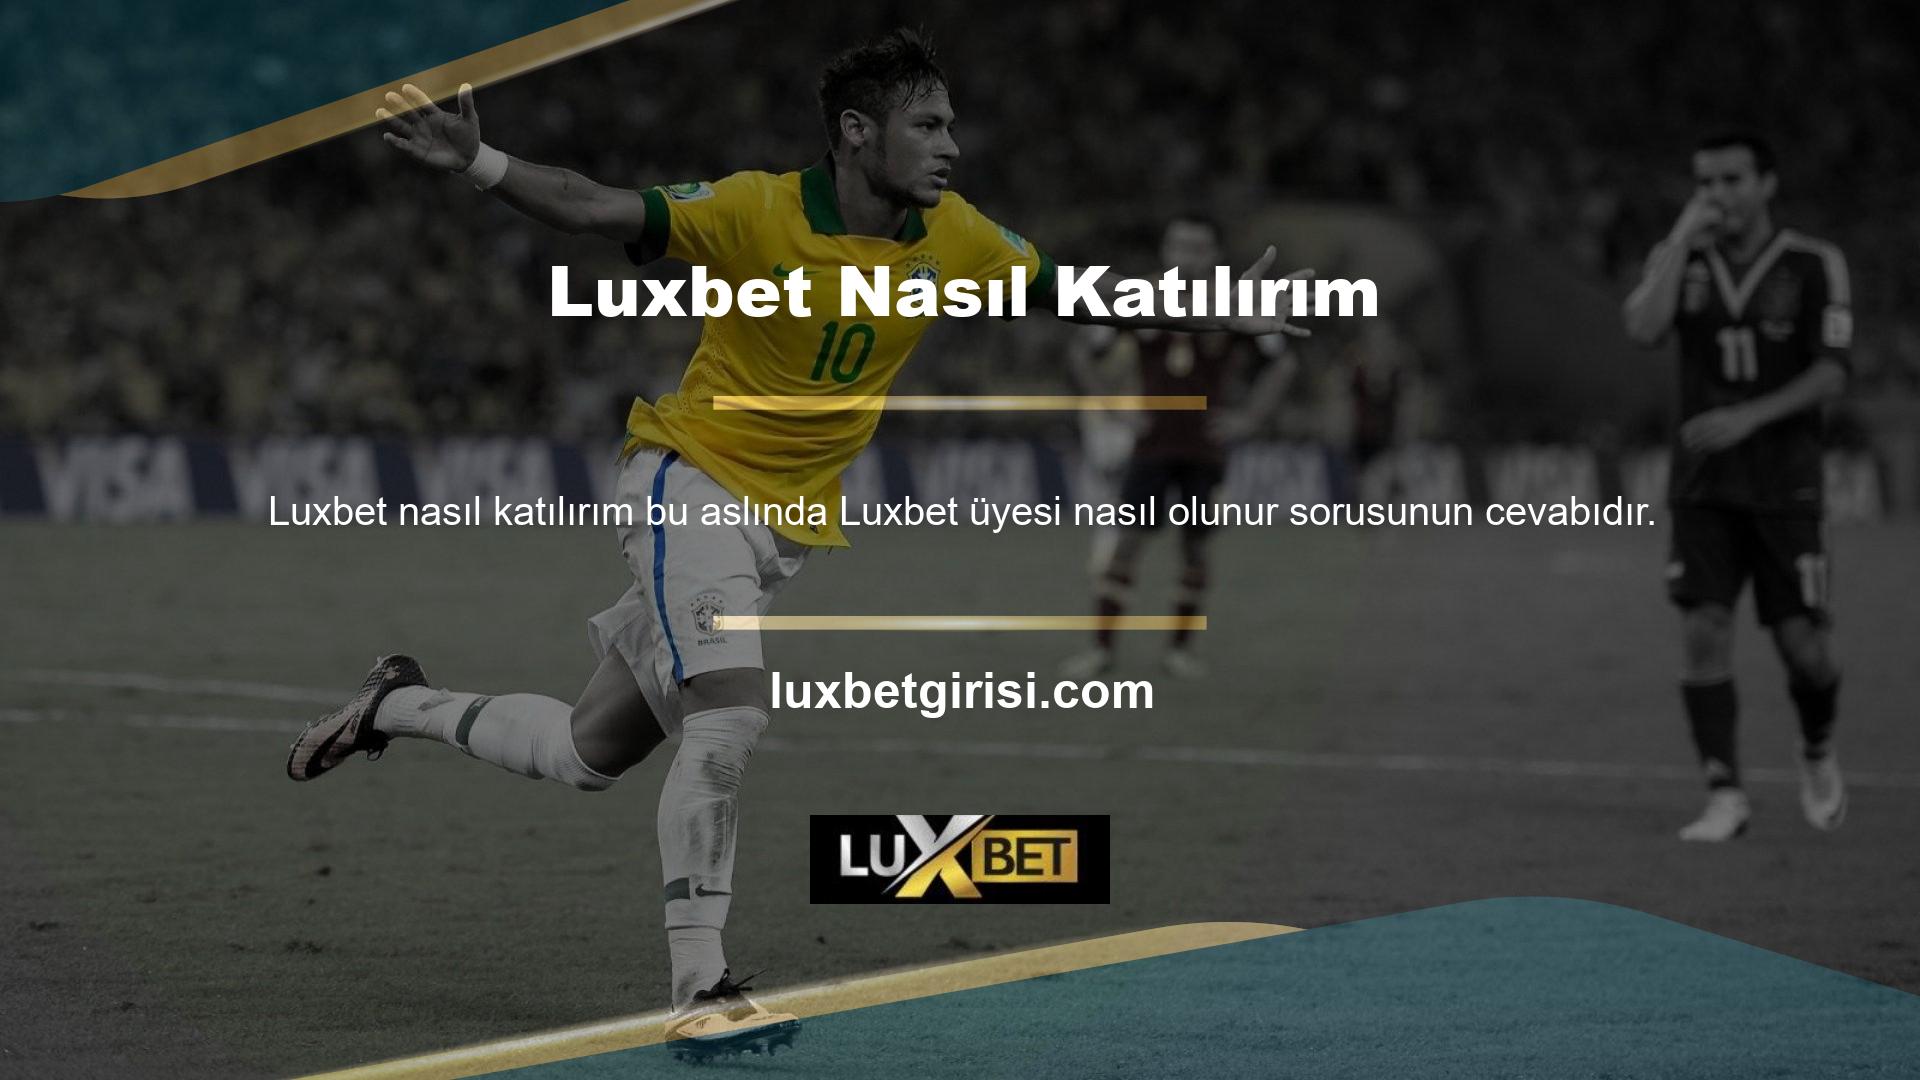 Dilerseniz, size sağladığımız yeni Luxbet giriş adresi üzerinden, orijinal web sitesine rahat ve güvenli bir şekilde erişmenizi sağlar